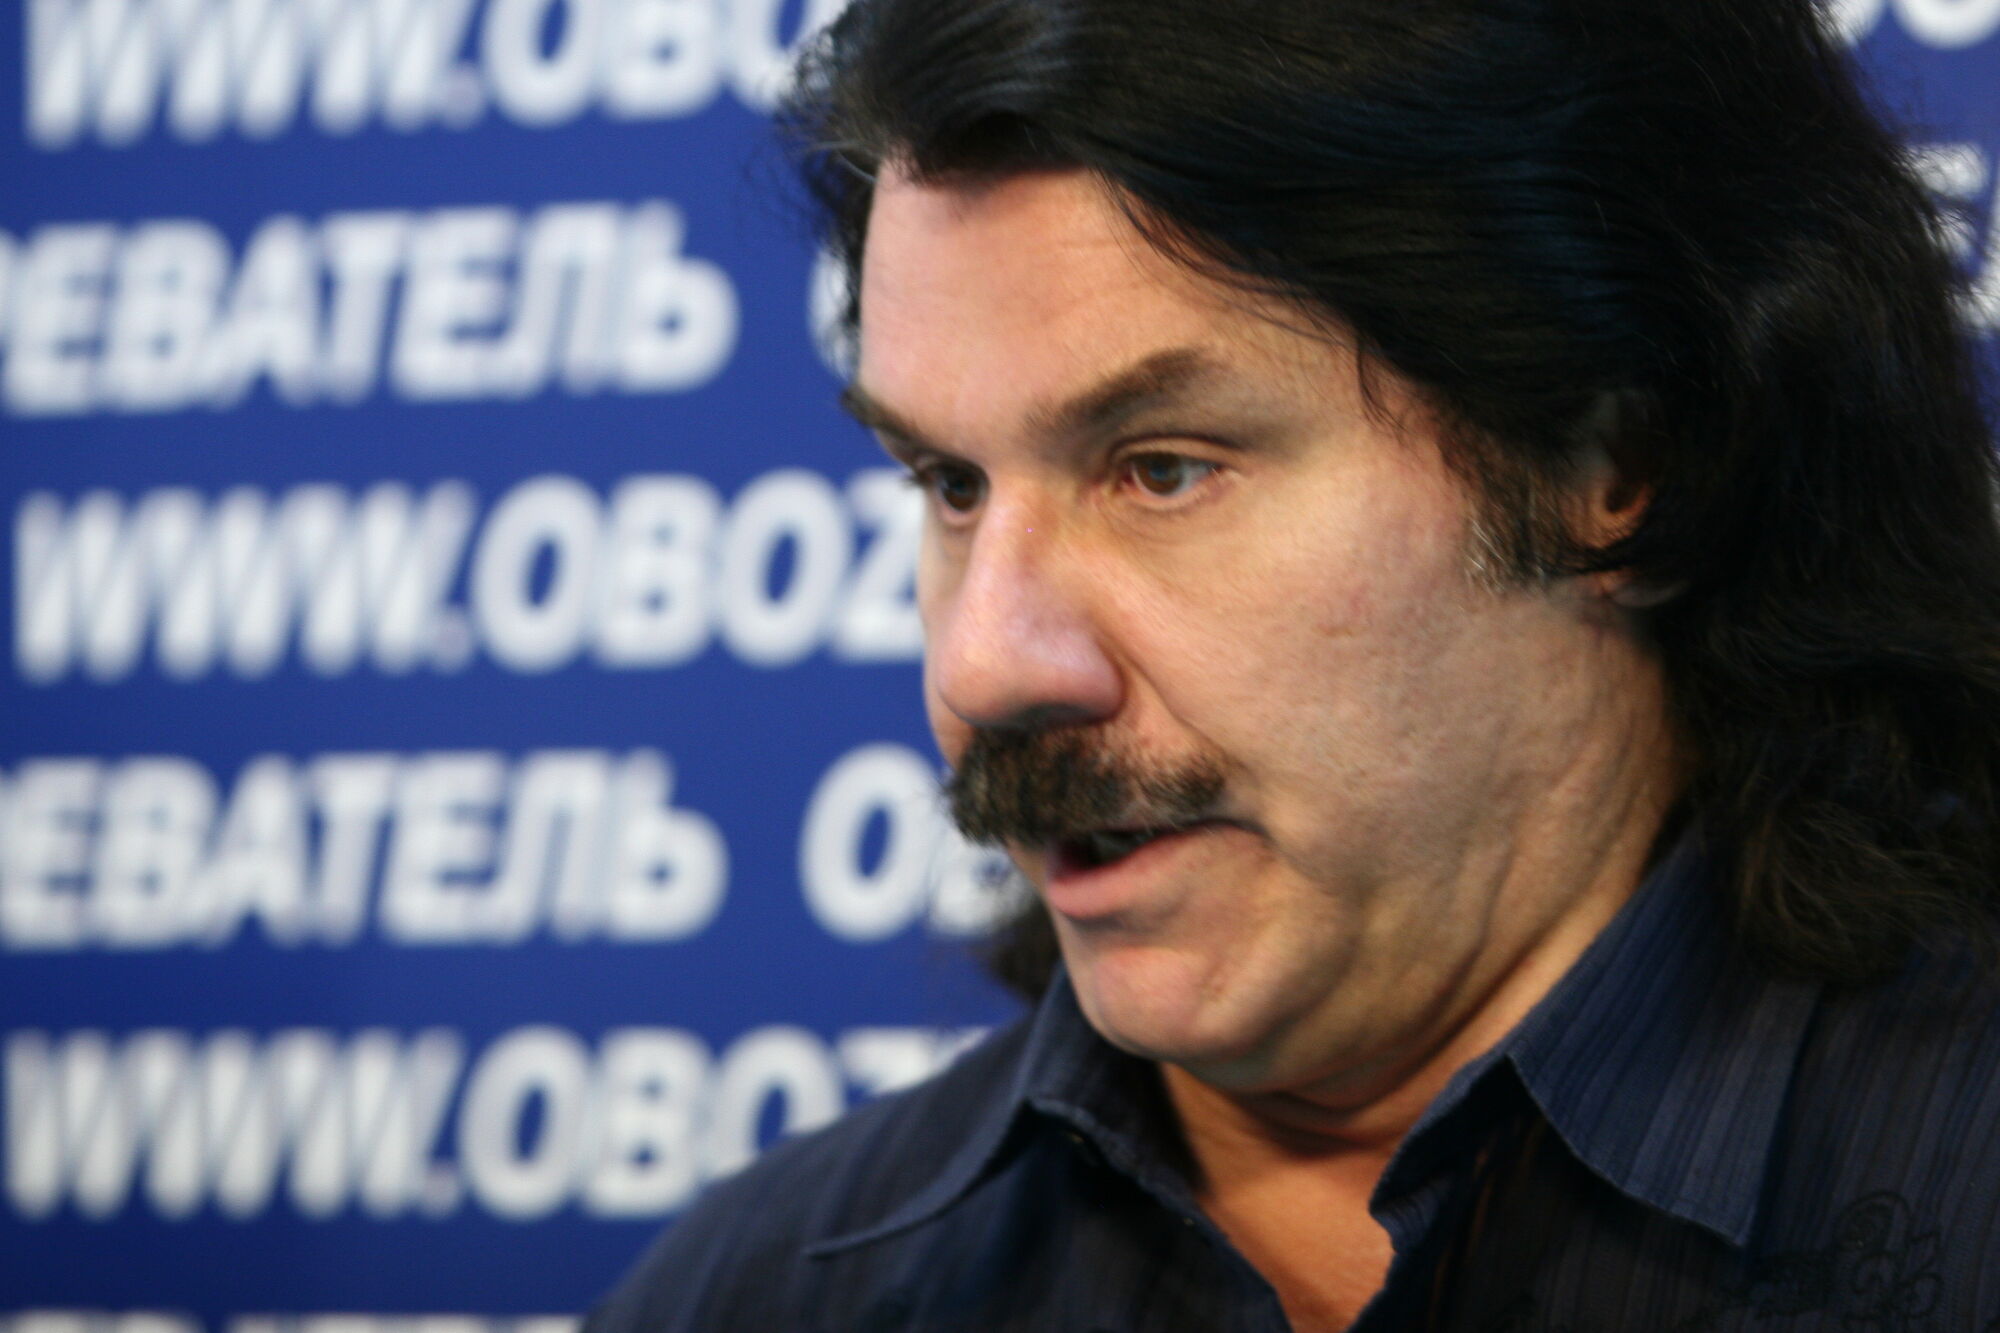 Зибров угрожает отрубить голову журналисту. Видео